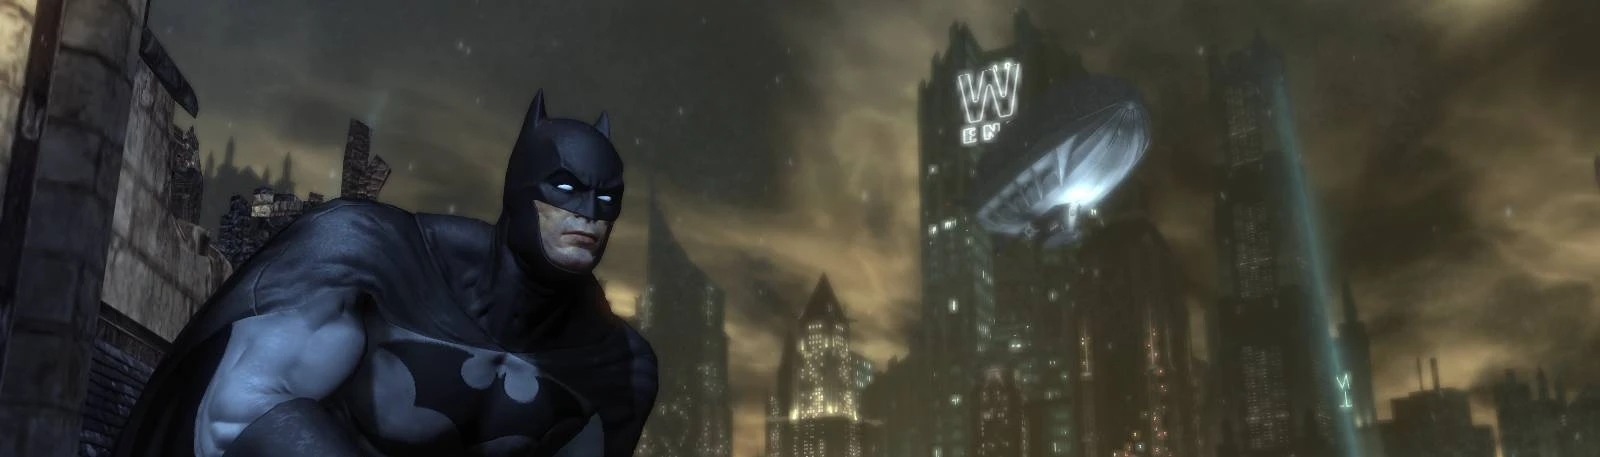 Original Arkham City Batsuit - No Damage [Batman: Arkham City] [Mods]